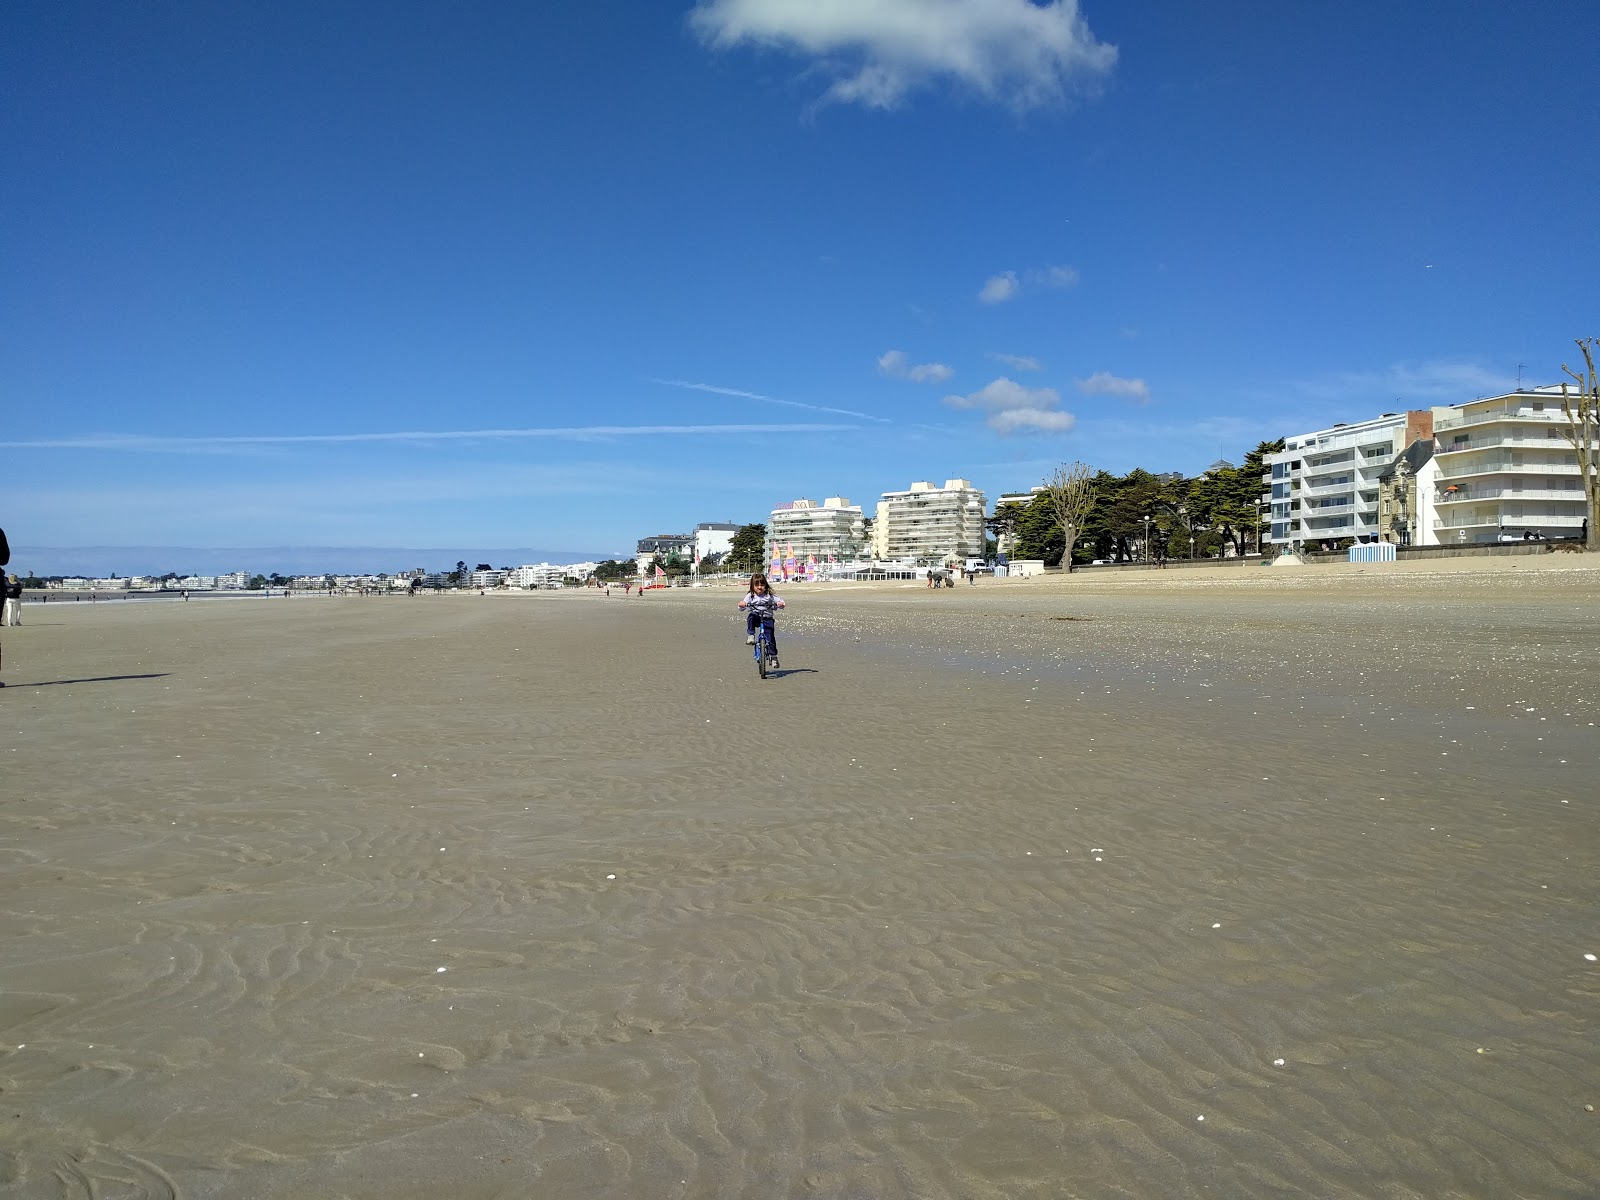 Zdjęcie Benoit beach - popularne miejsce wśród znawców relaksu